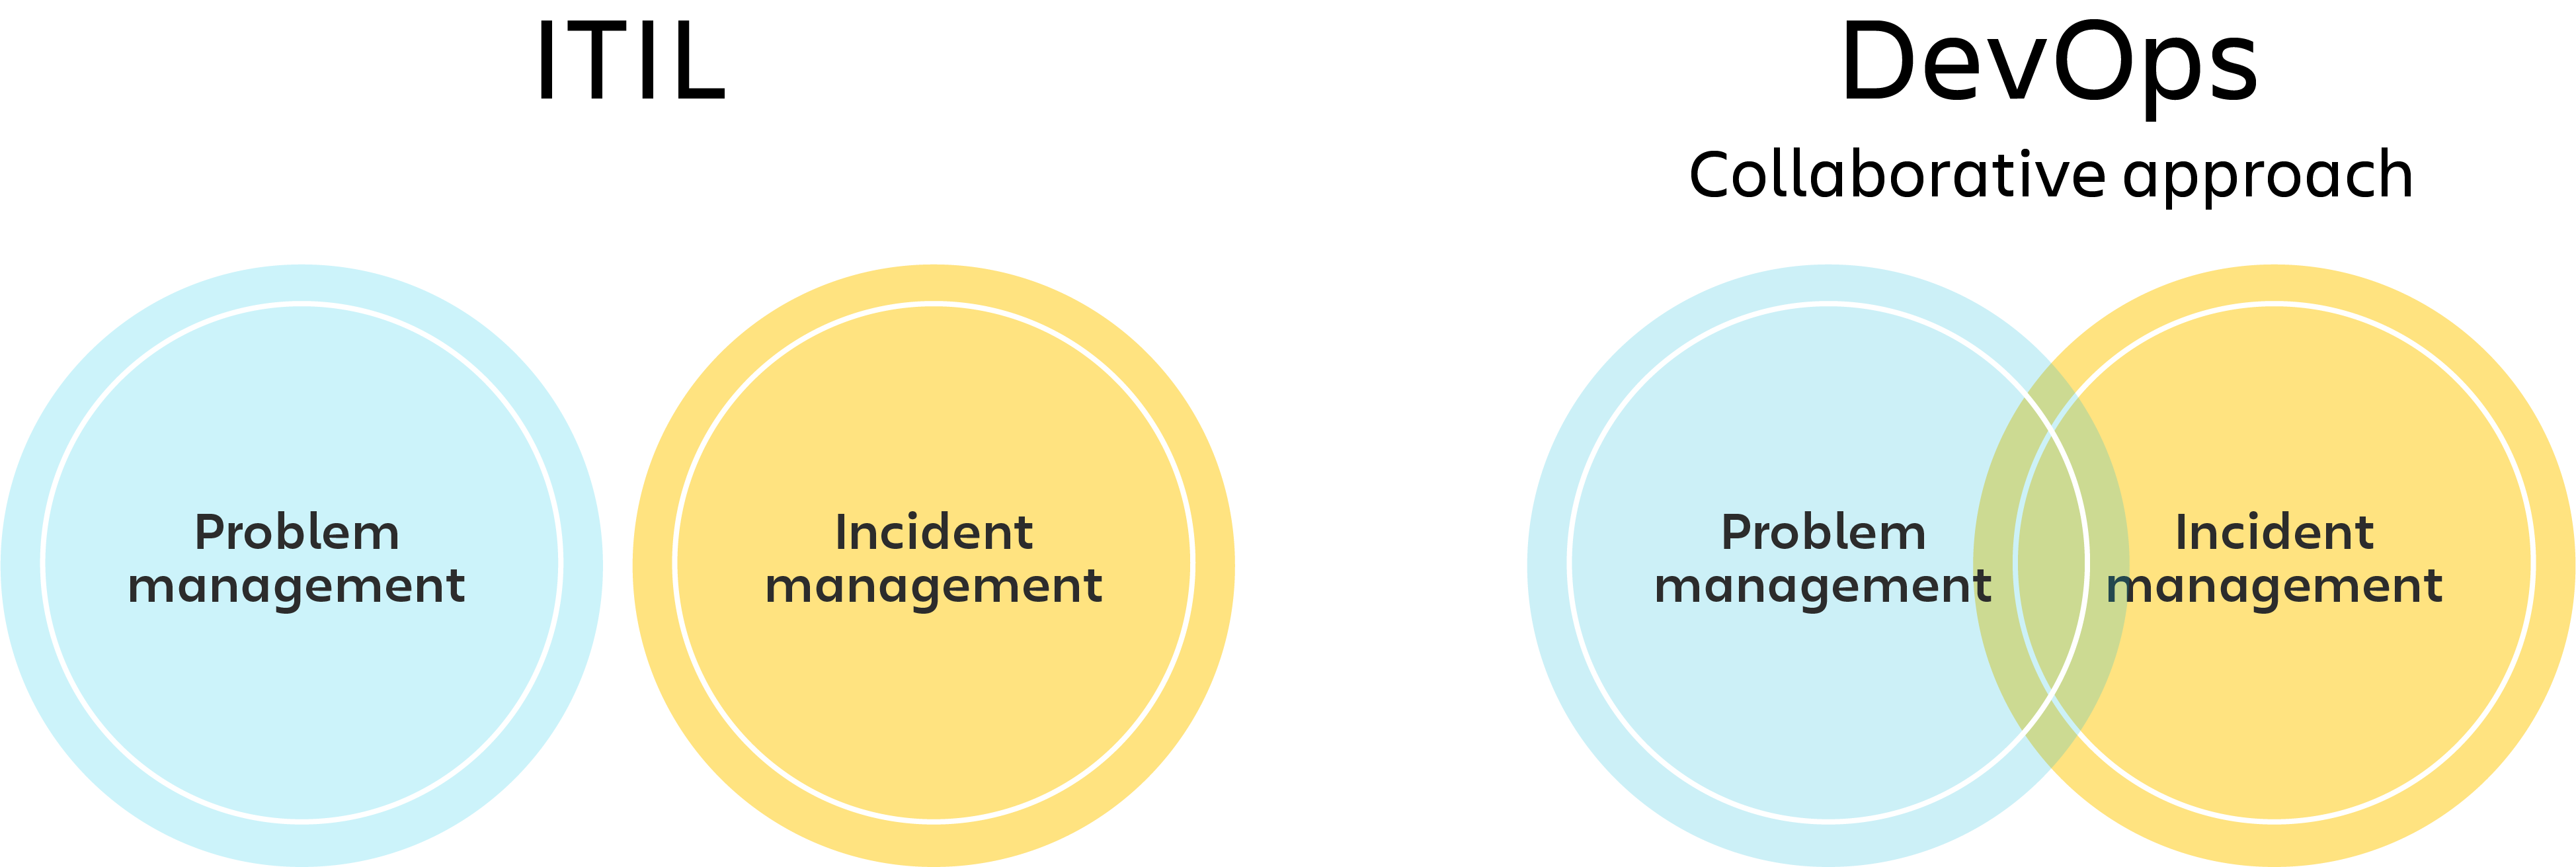 ITIL-diagram met afzonderlijke cirkels voor probleem- en incidentmanagement en DevOps-diagram met Venn-diagram van probleem- en incidentmanagement